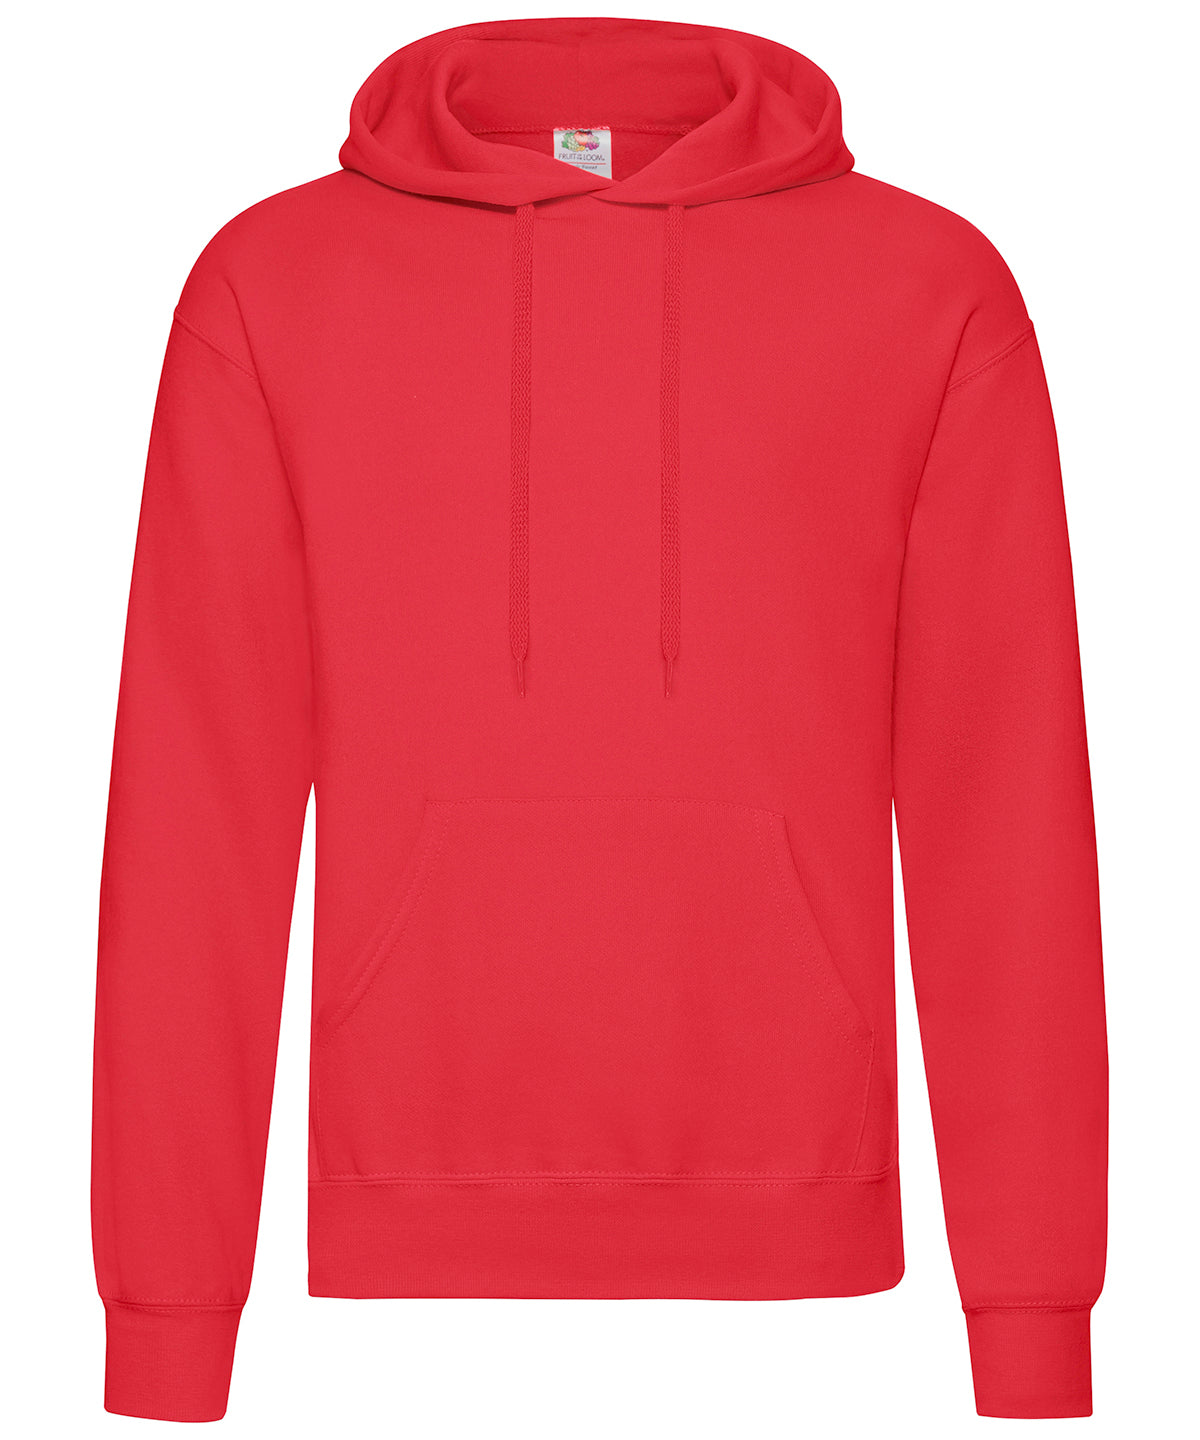 Personalised Hoodies - Mid Red Fruit of the Loom Classic 80/20 hooded sweatshirt